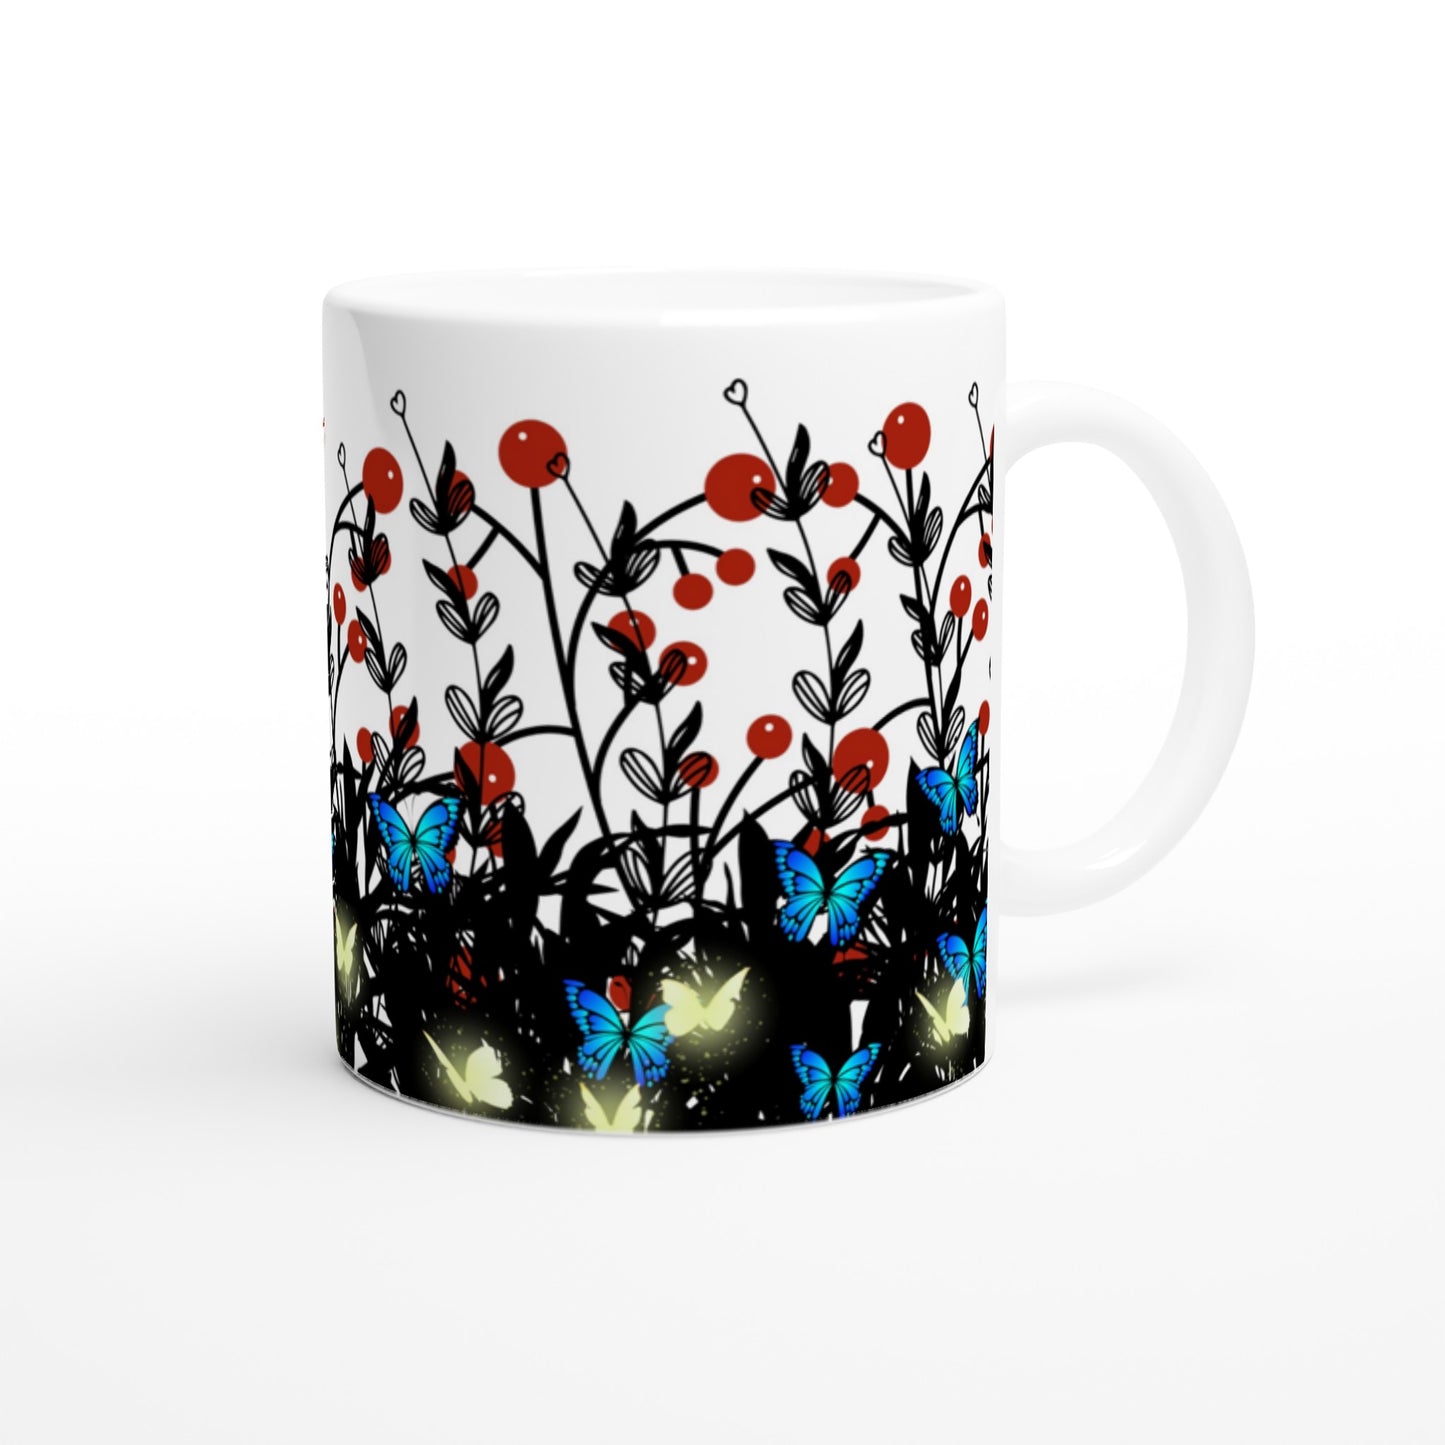 Bonita taza de café con flores y mariposas